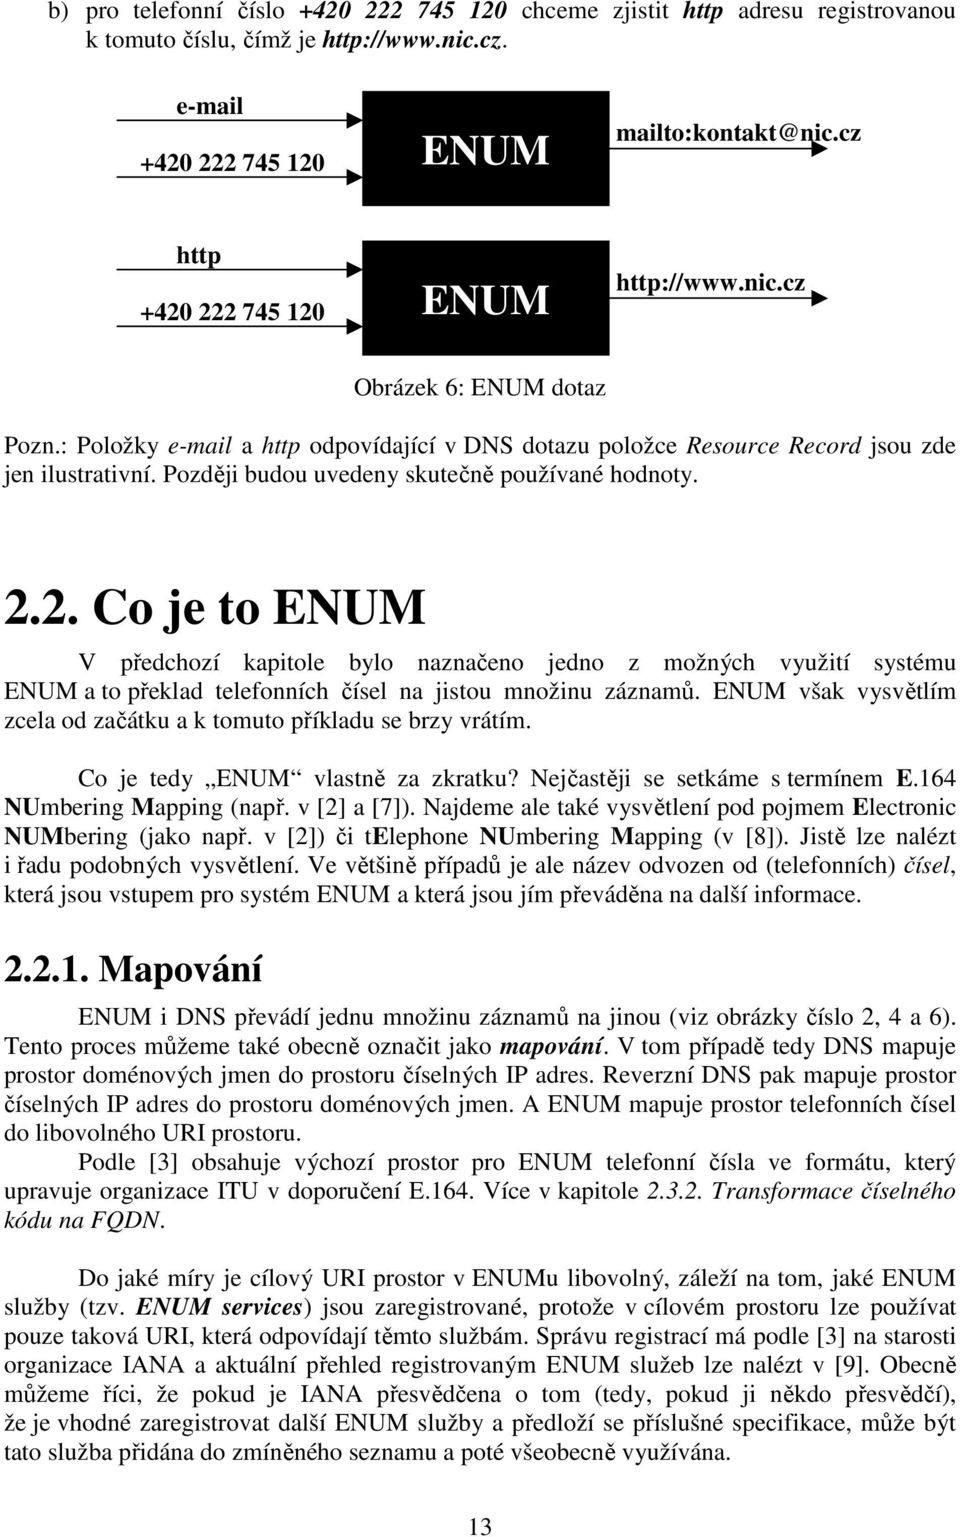 Později budou uvedeny skutečně používané hodnoty. 2.2. Co je to ENUM V předchozí kapitole bylo naznačeno jedno z možných využití systému ENUM a to překlad telefonních čísel na jistou množinu záznamů.